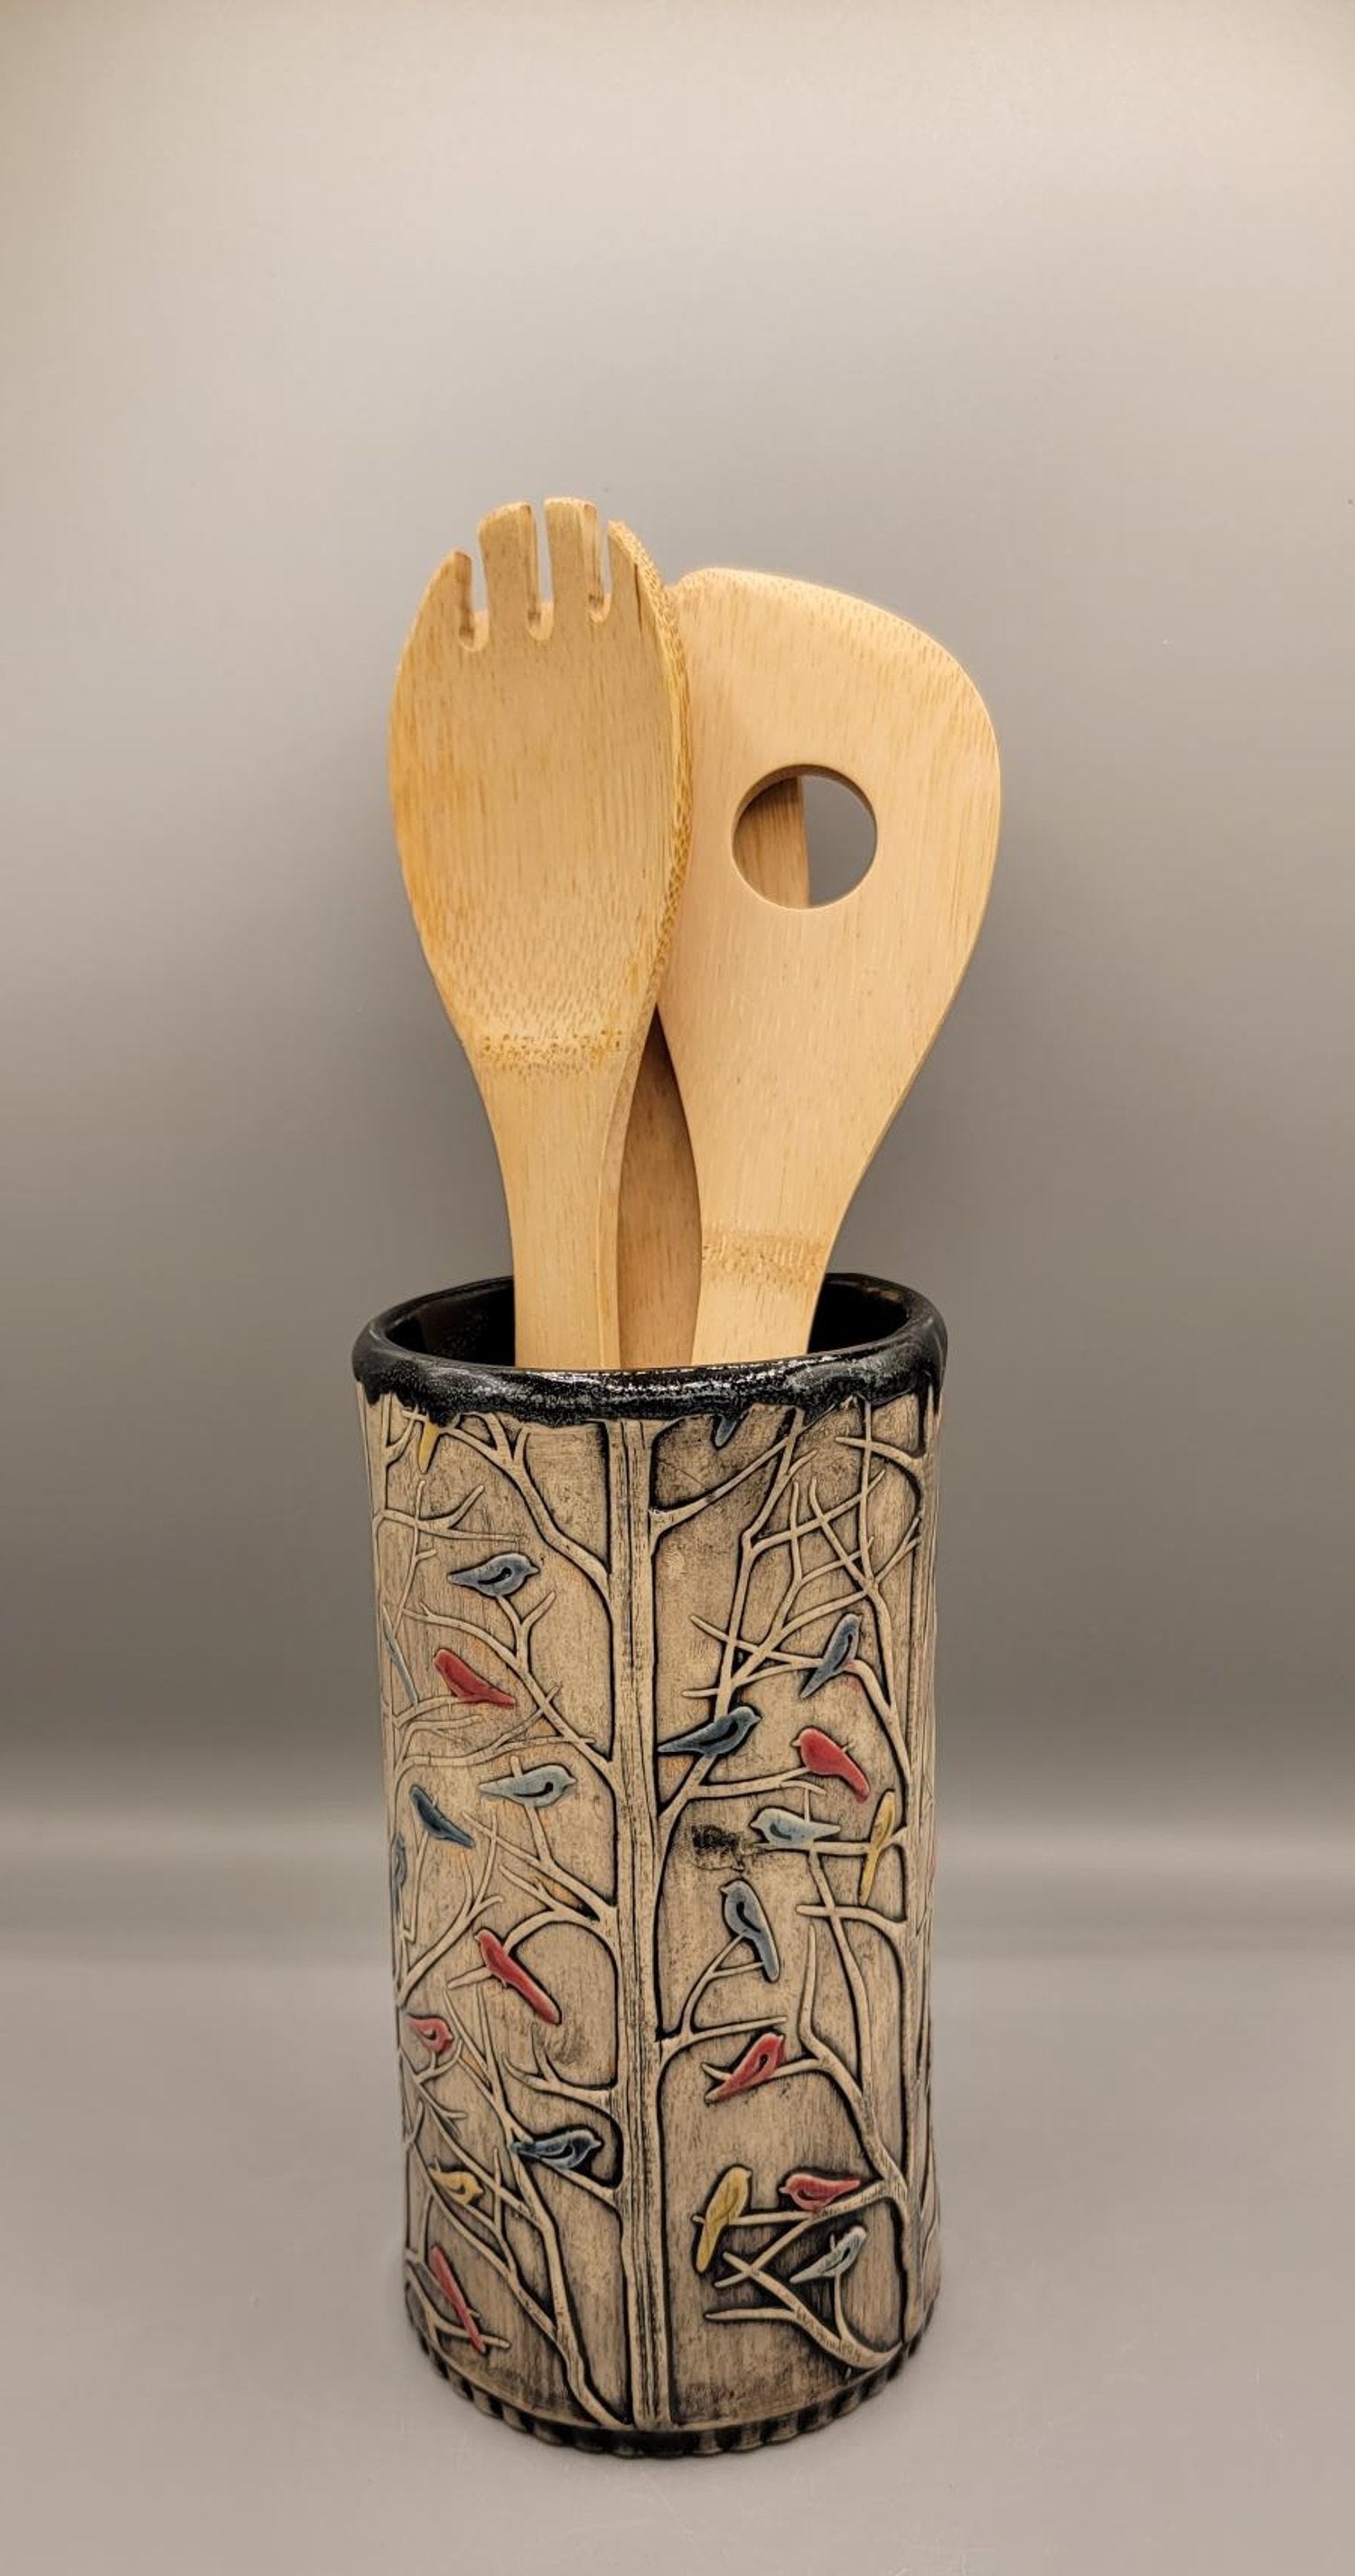 Hand Painted Embossed Birds in trees Ceramic Vase/Utensil Holder